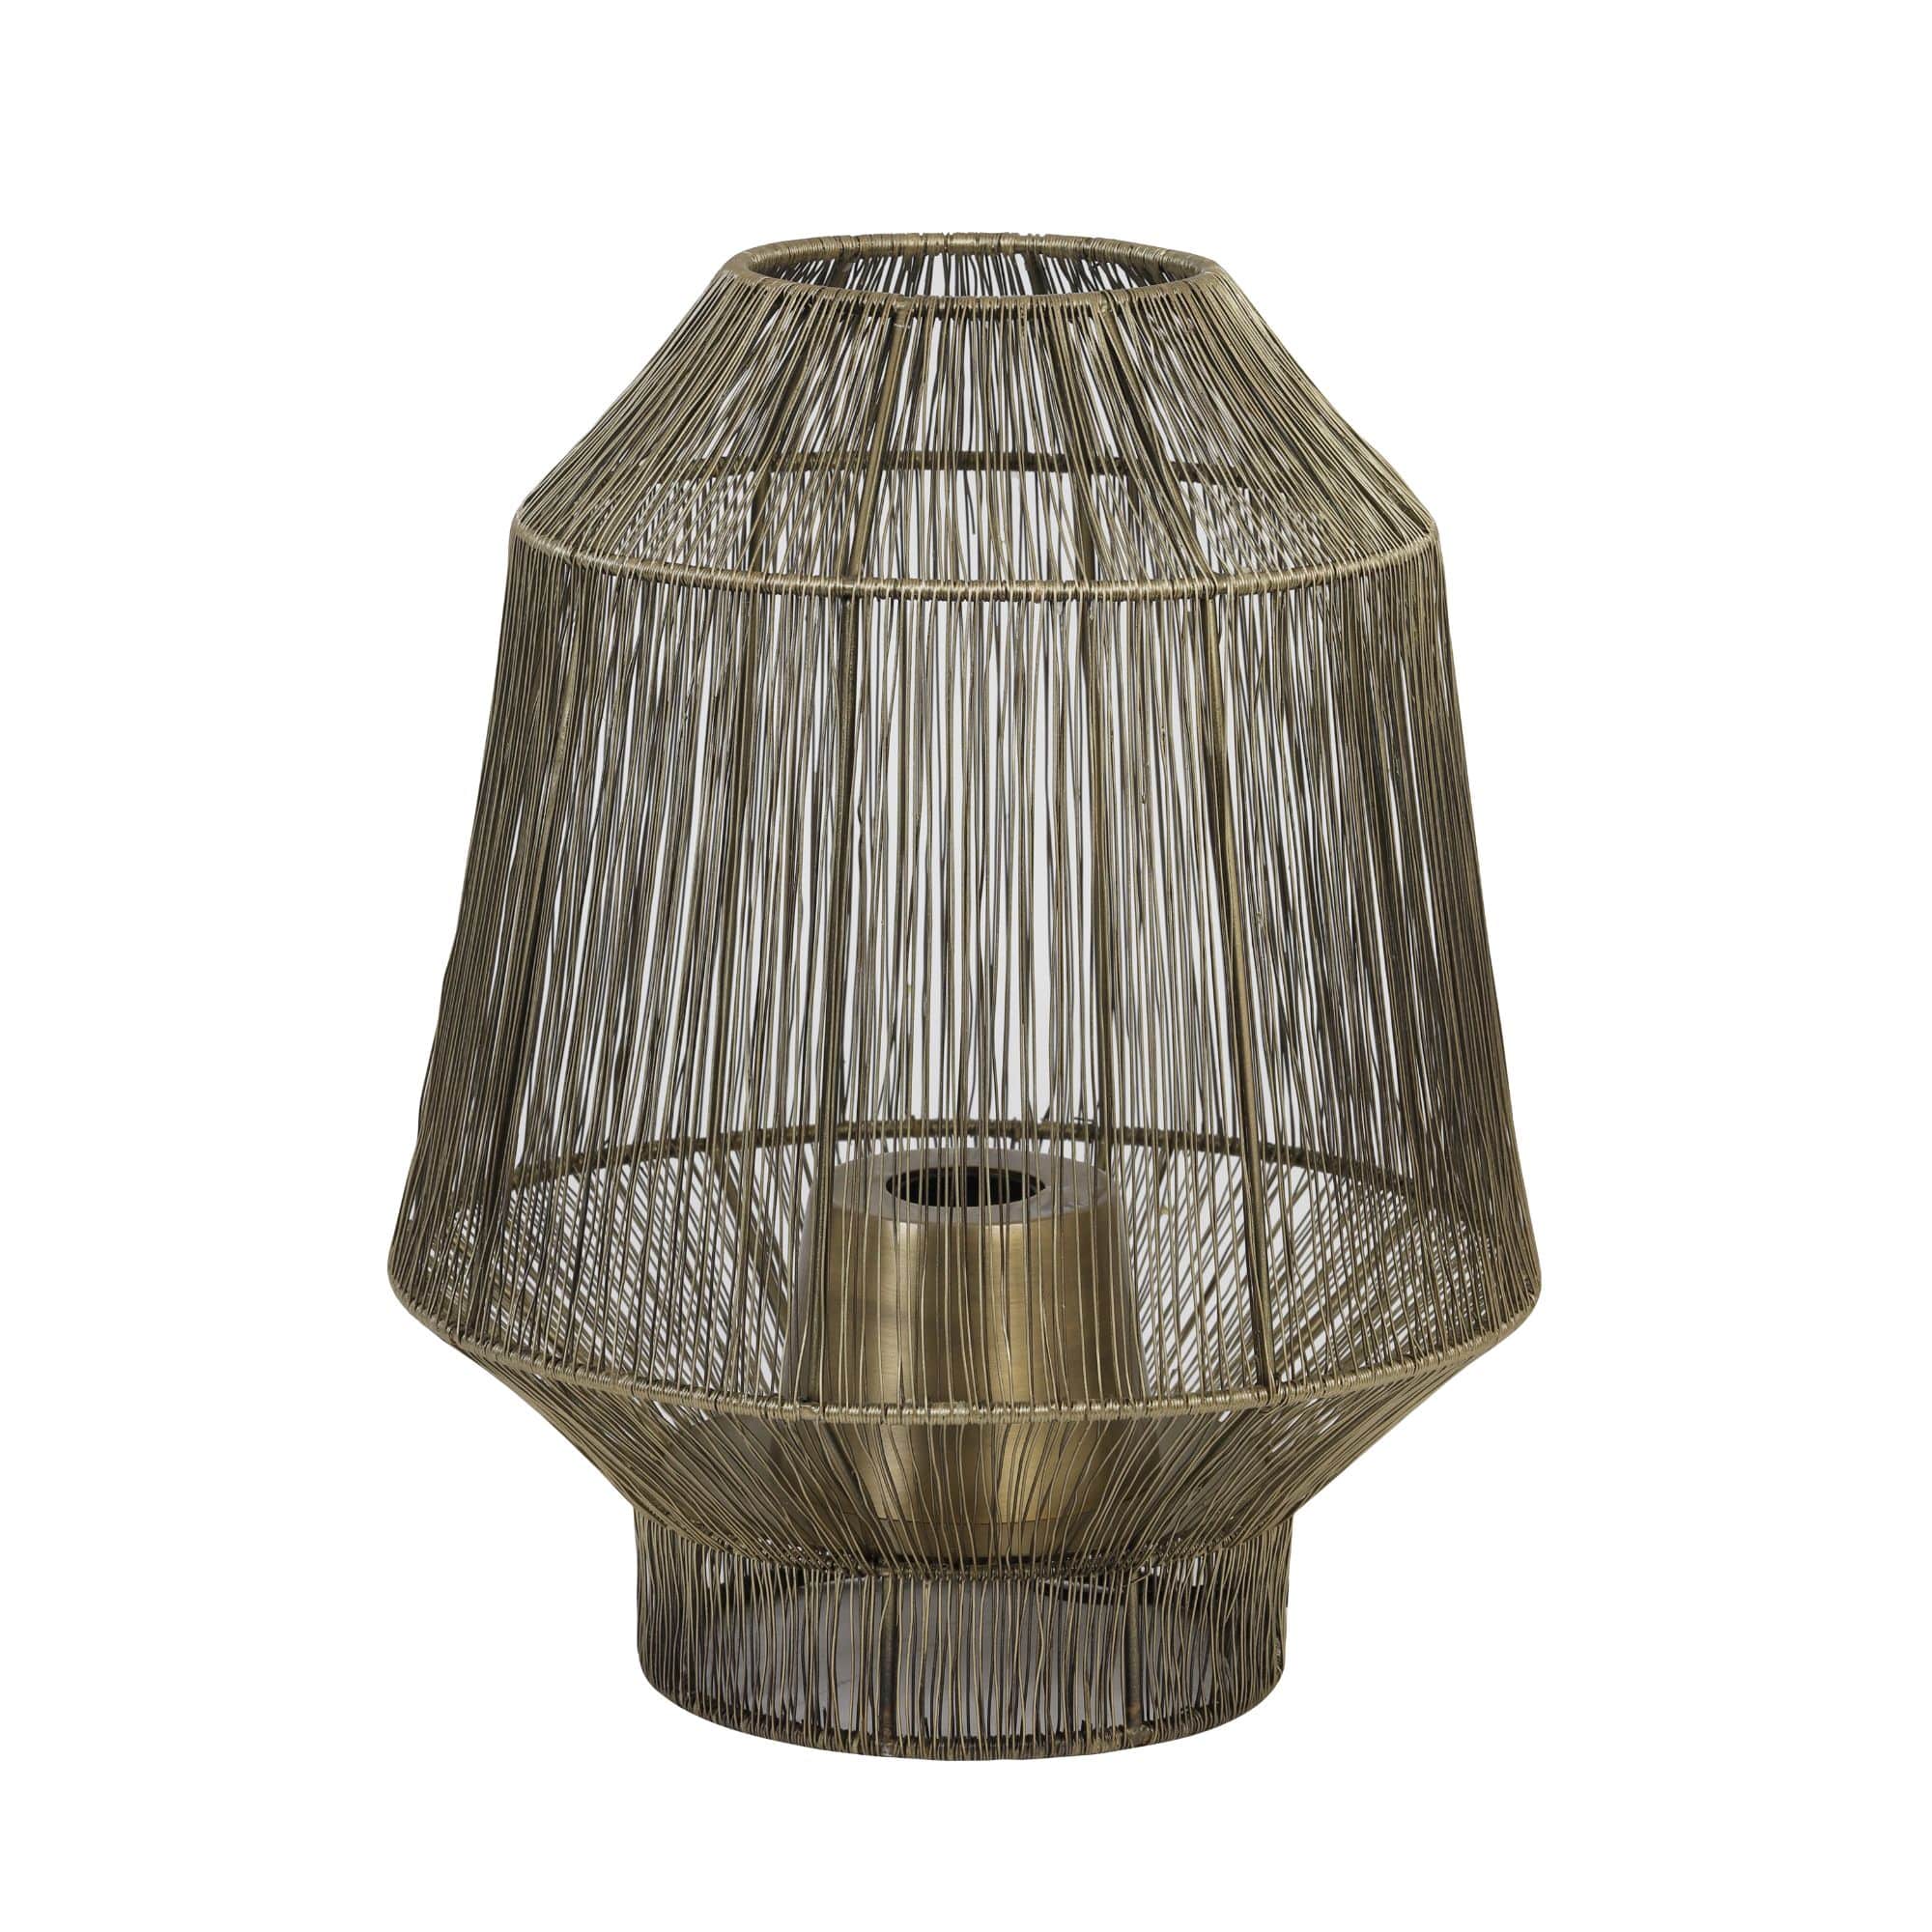 Light & Living - Tafellamp Vitora - Antiek Brons - Ø37cm